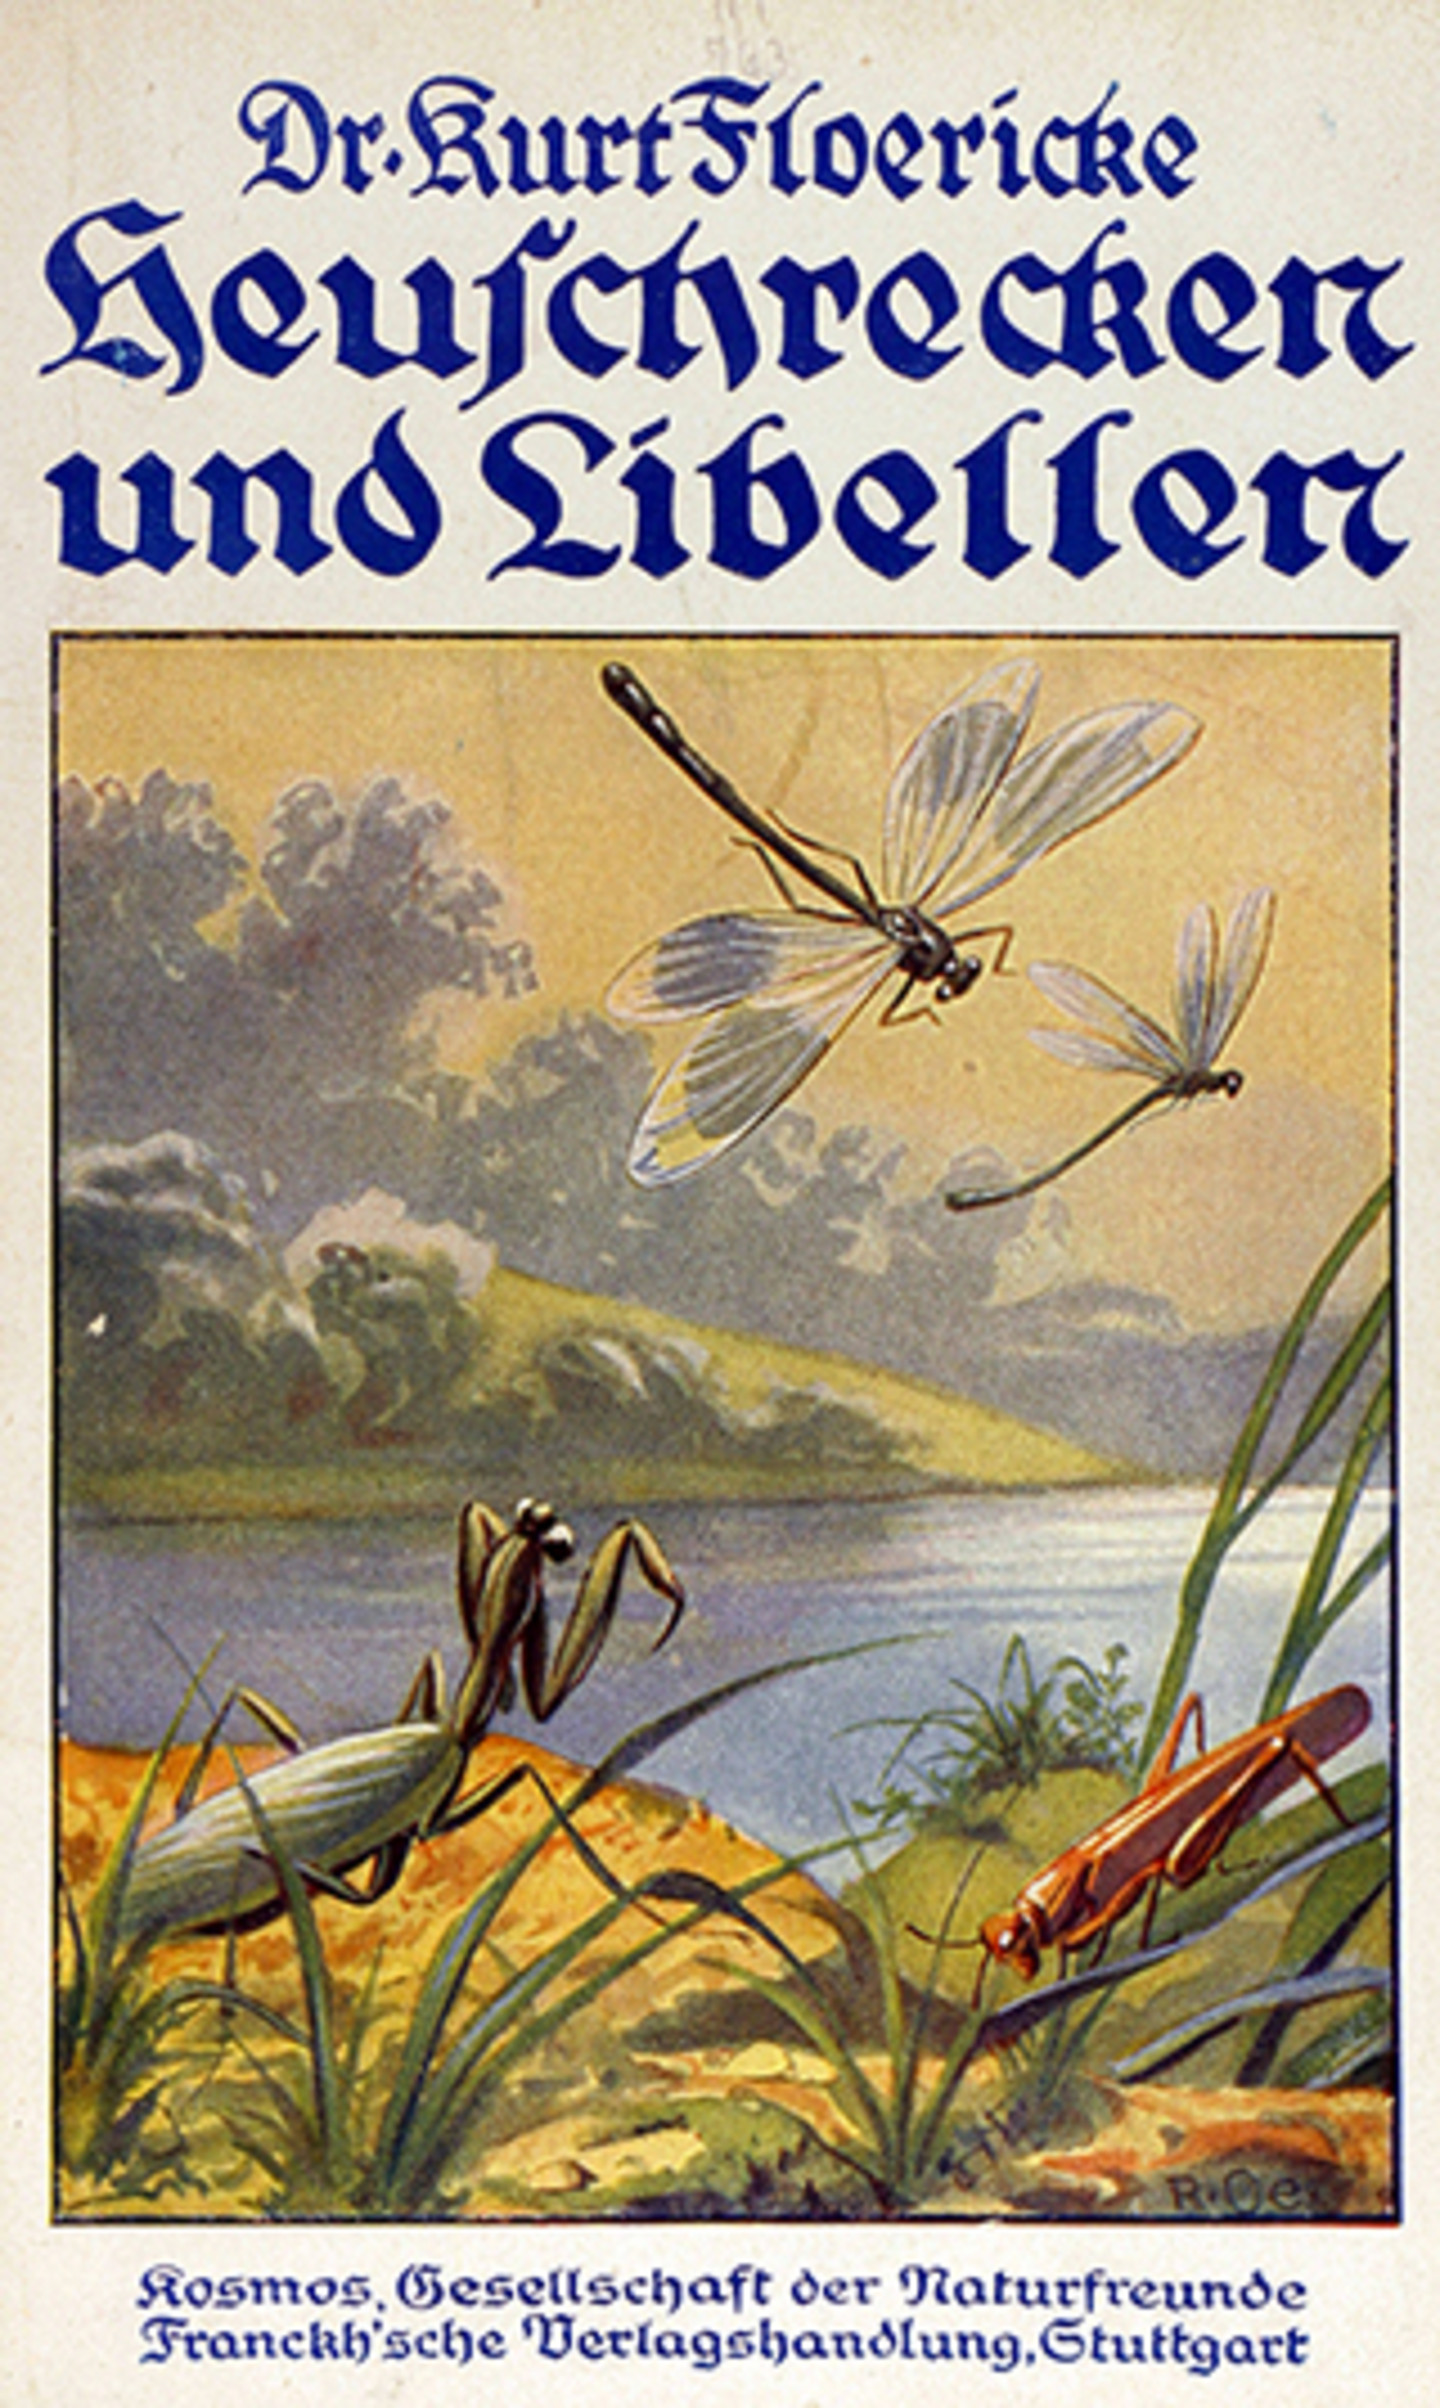 Das Titelblatt von "Heuschrecken und Libellen" von Dr. Kurt Floericke. Abgebildet ist eine Heuschrecke vor einem Teich, über dem zwei Libellen fliegen.